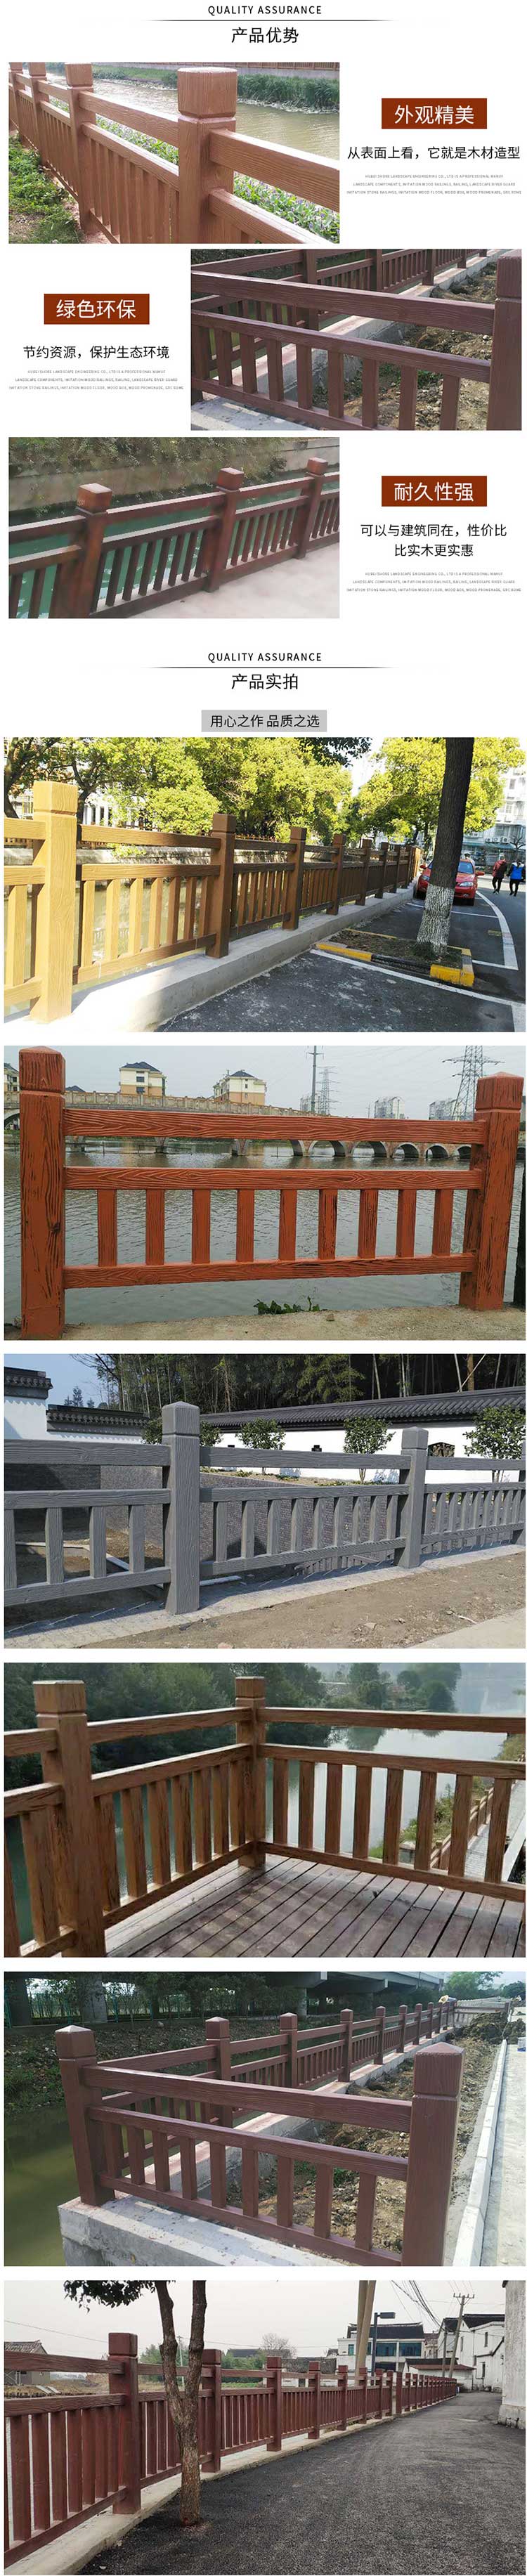 惠州别墅庭院仿木护栏 混凝土浇筑园林景观栏杆 池塘水泥河堤防护